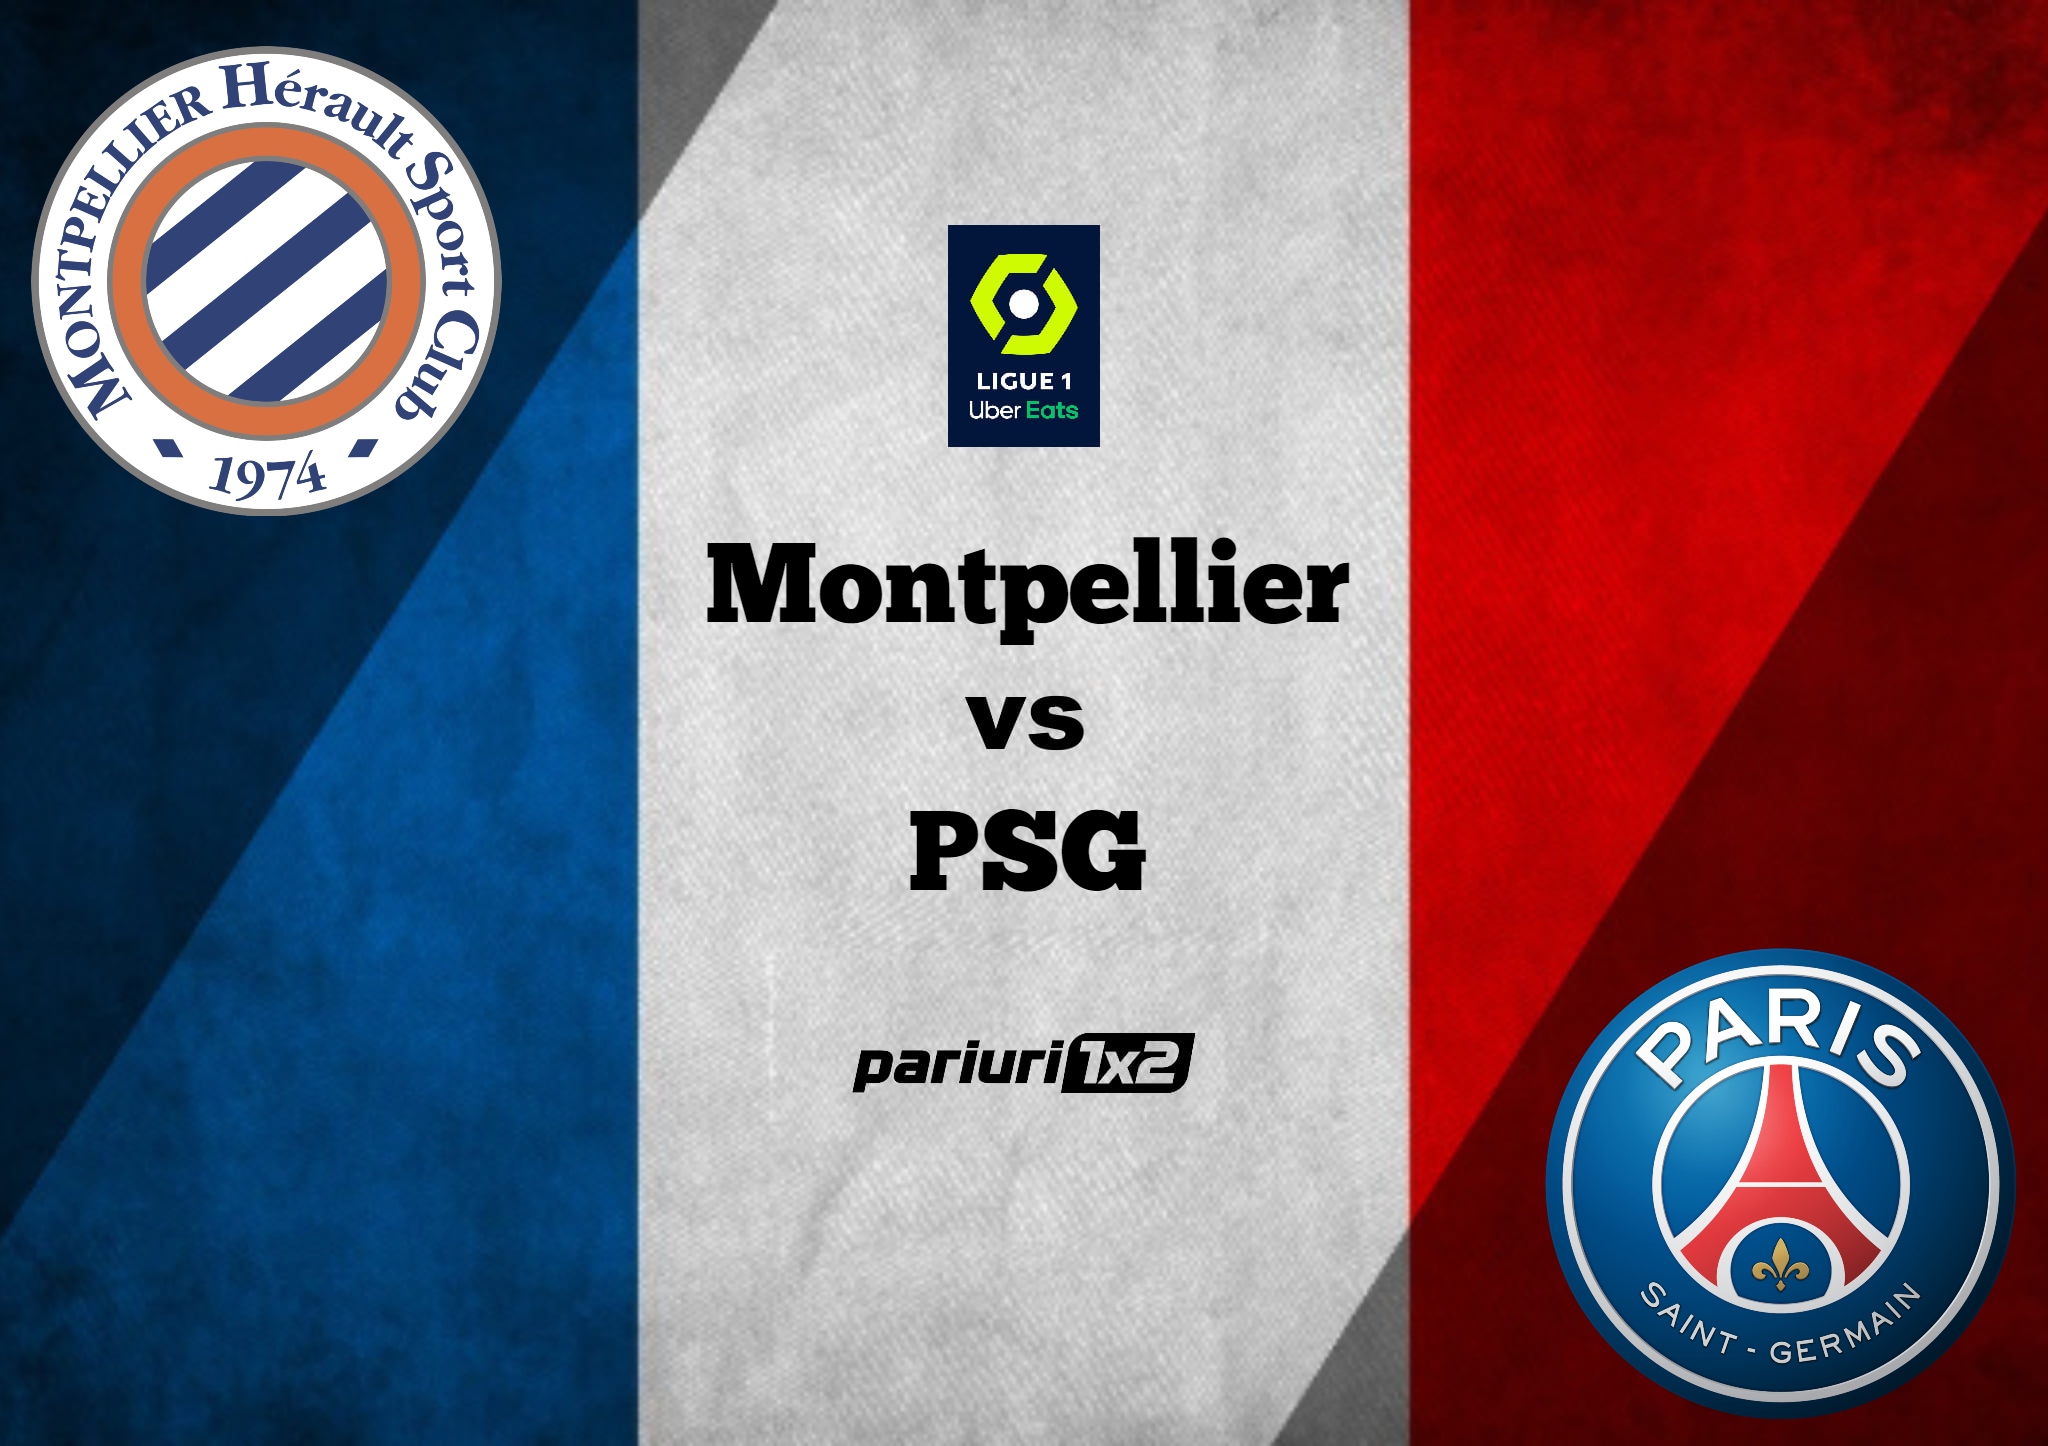 Ponturi fotbal online 187 Montpellier PSG Evitam pariurile quot clasice 